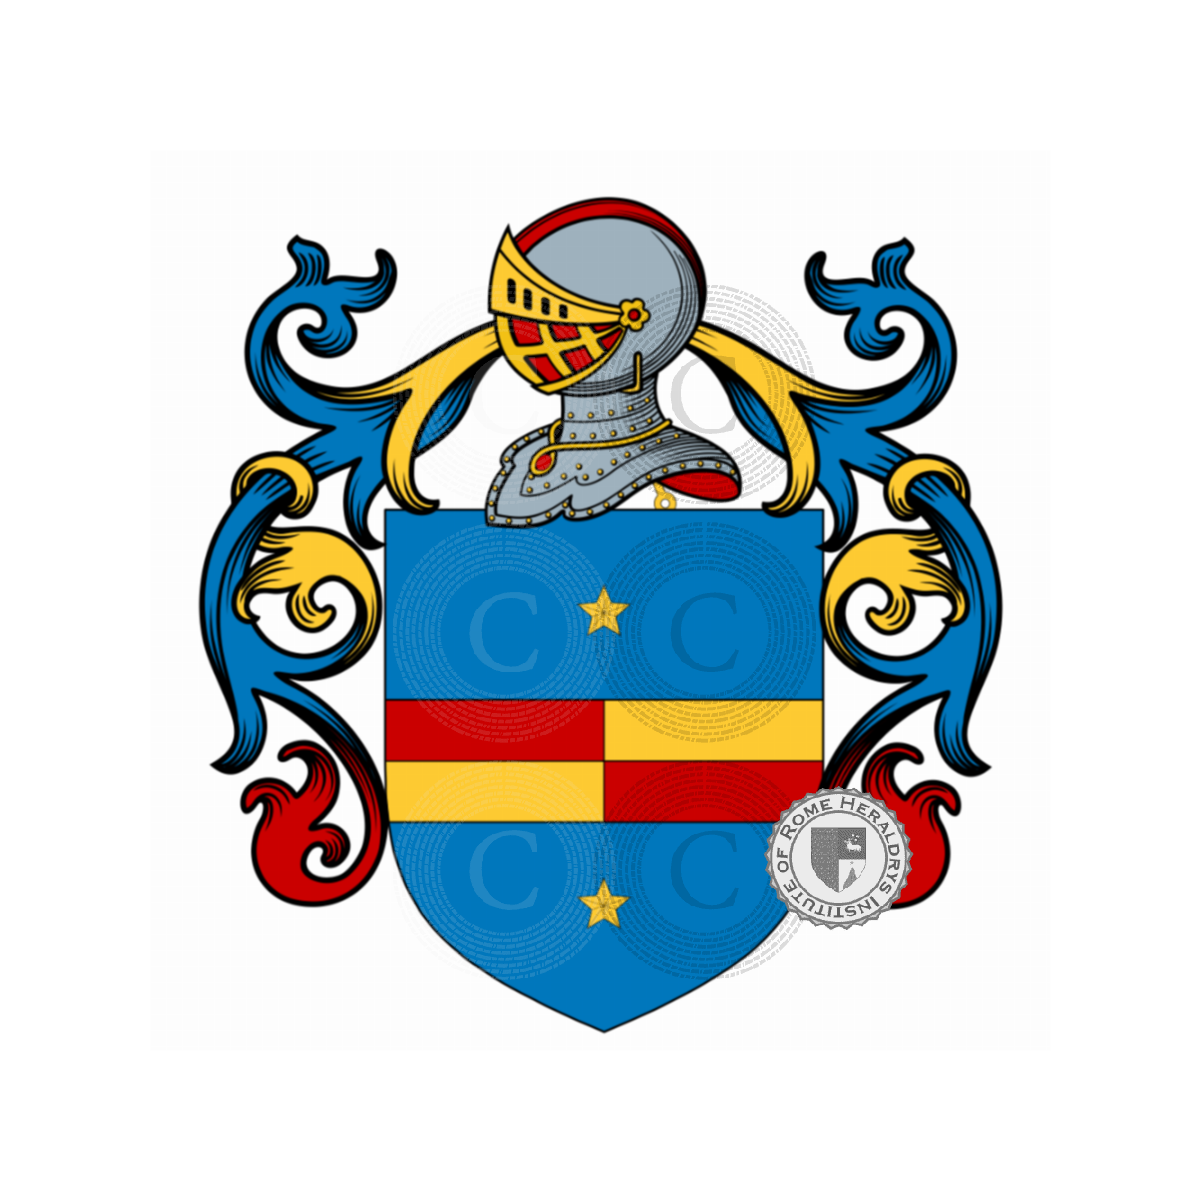 Wappen der FamiliePorqueddu, della Ratta,Ratti